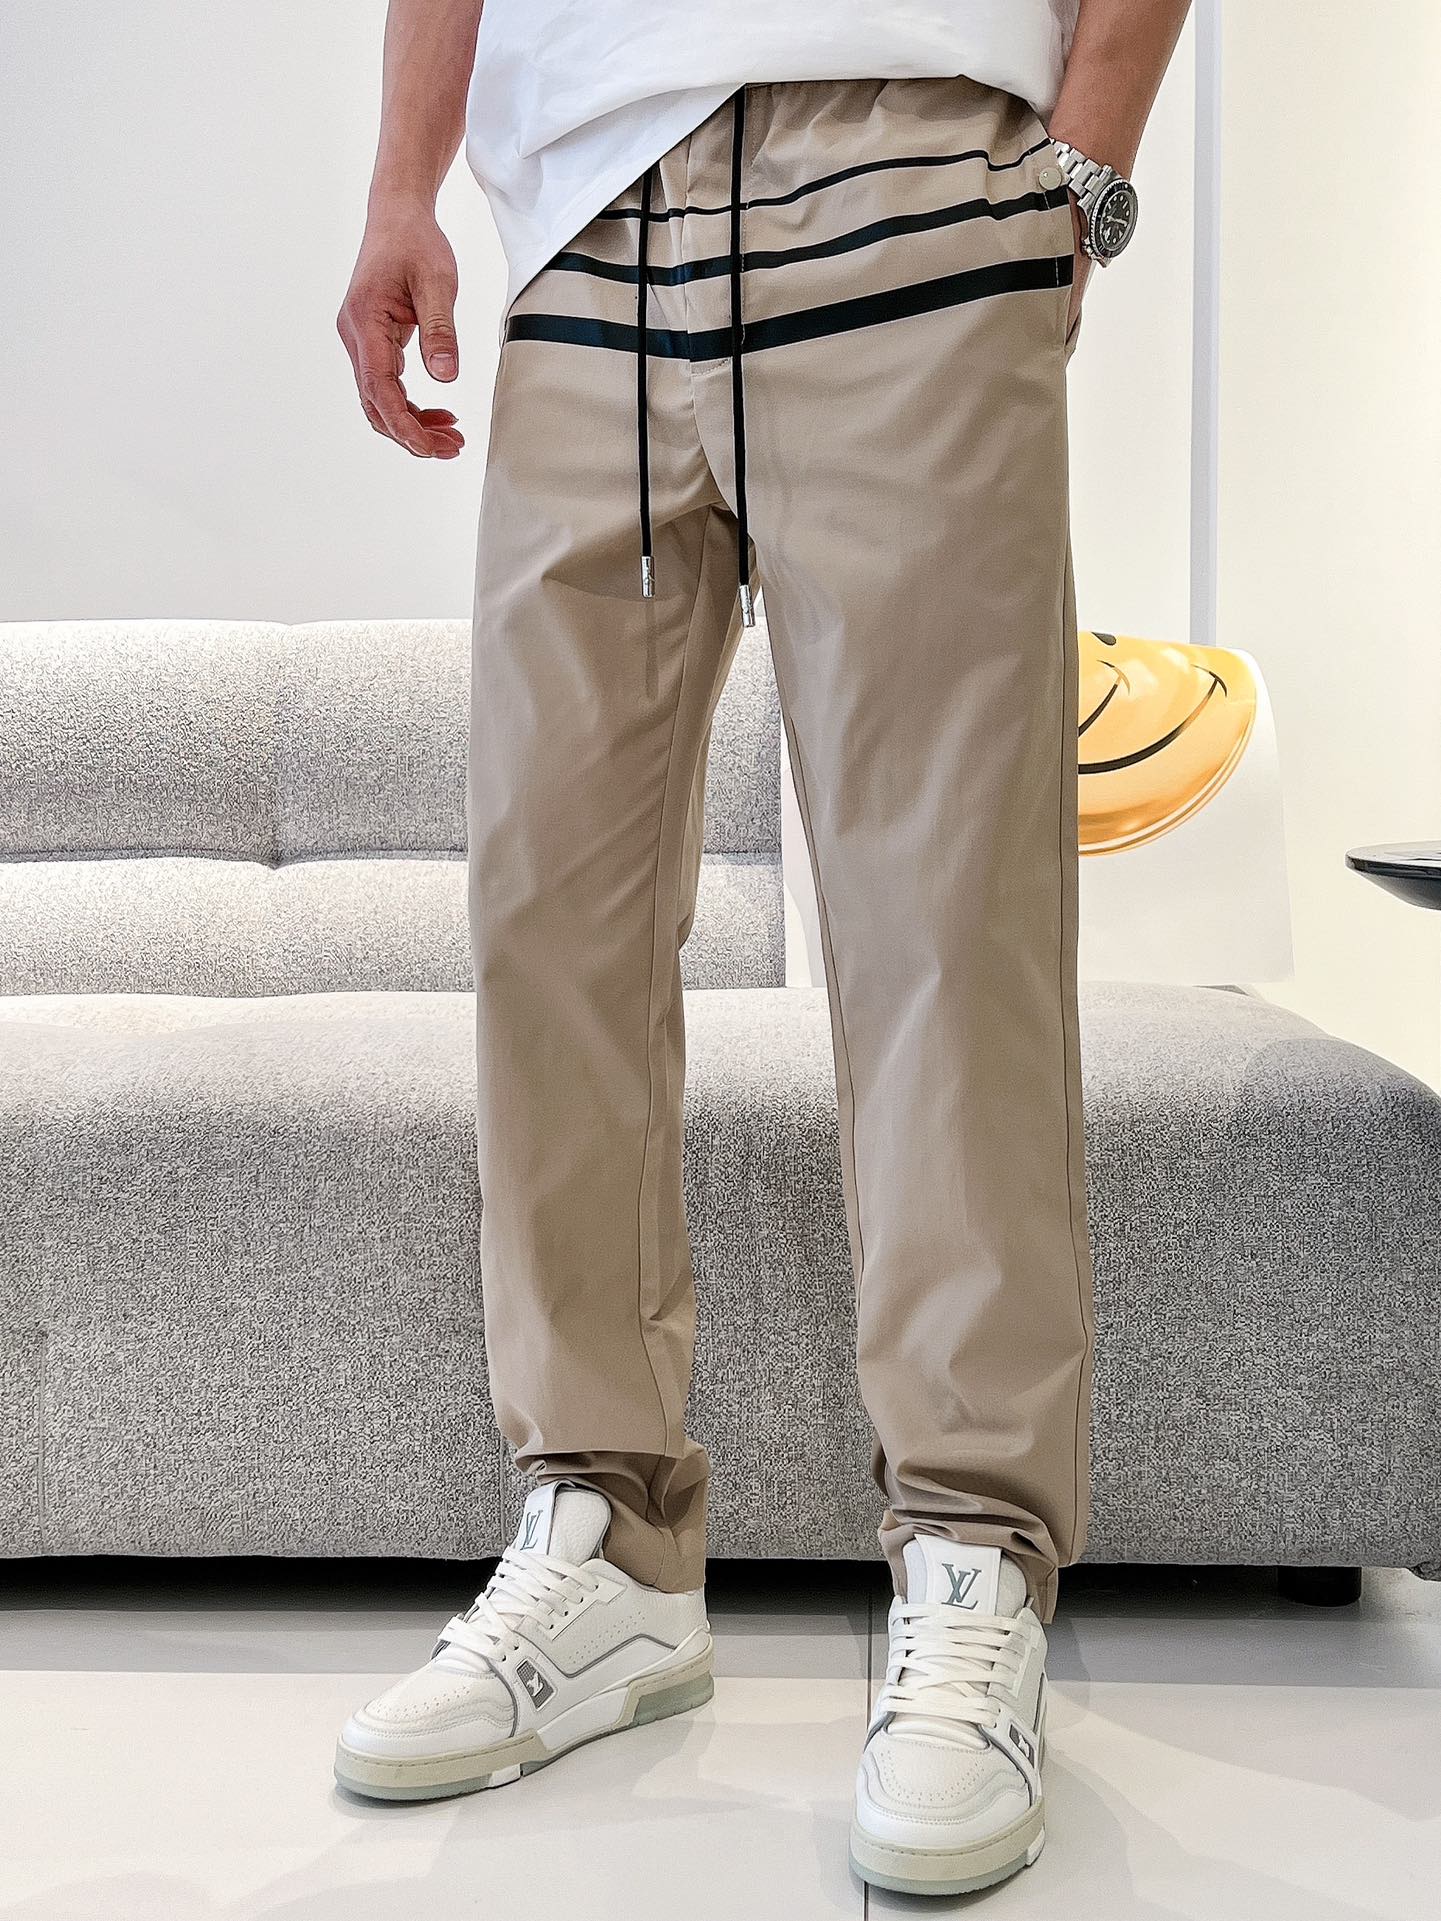 Prada男士休闲裤最新款上身版型无敌正！绝对可以闭眼收的一款此款裤子非常百搭弹力腰围,日常上班户外运动